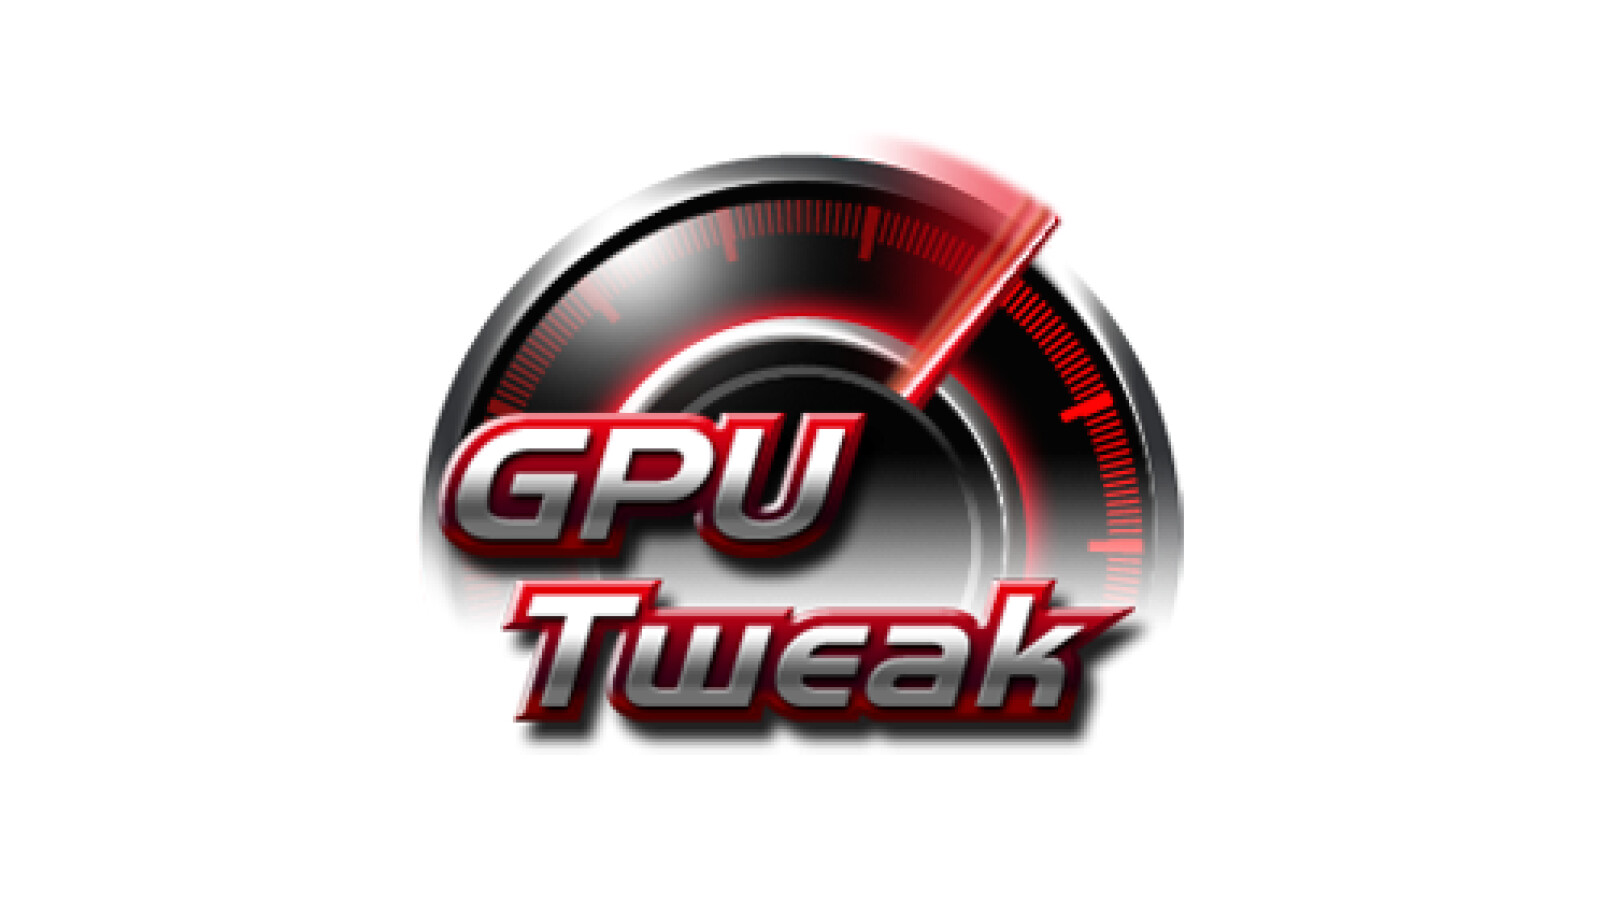 ASUS GPU Tweak II 2.3.9.0 / III 1.6.8.2 instal the last version for android